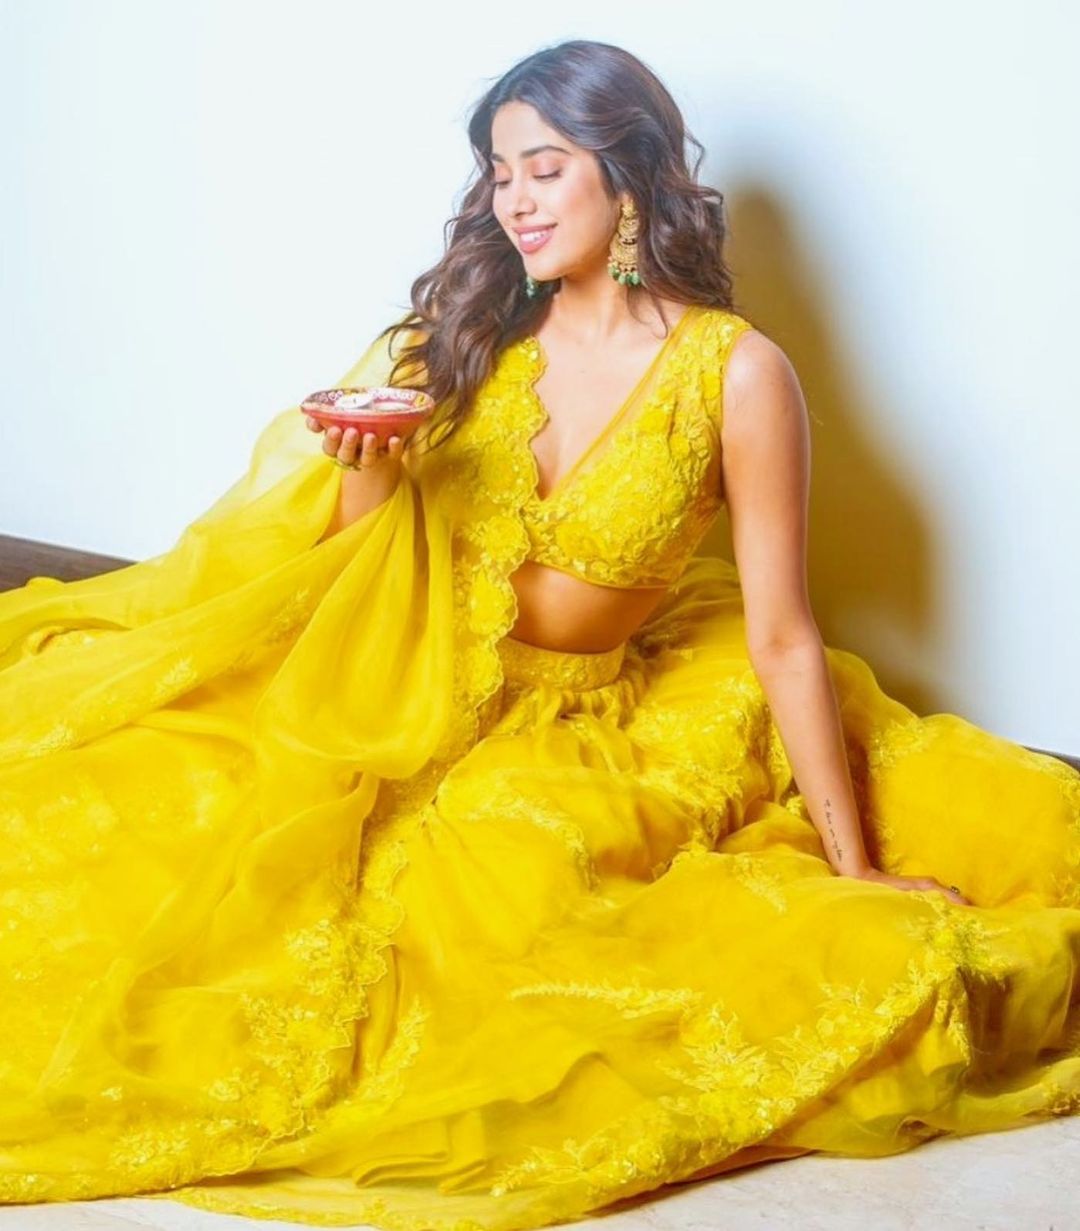  நடிகை ஜான்வி கபூர் ( Image : Instagram @janhvikapoor )